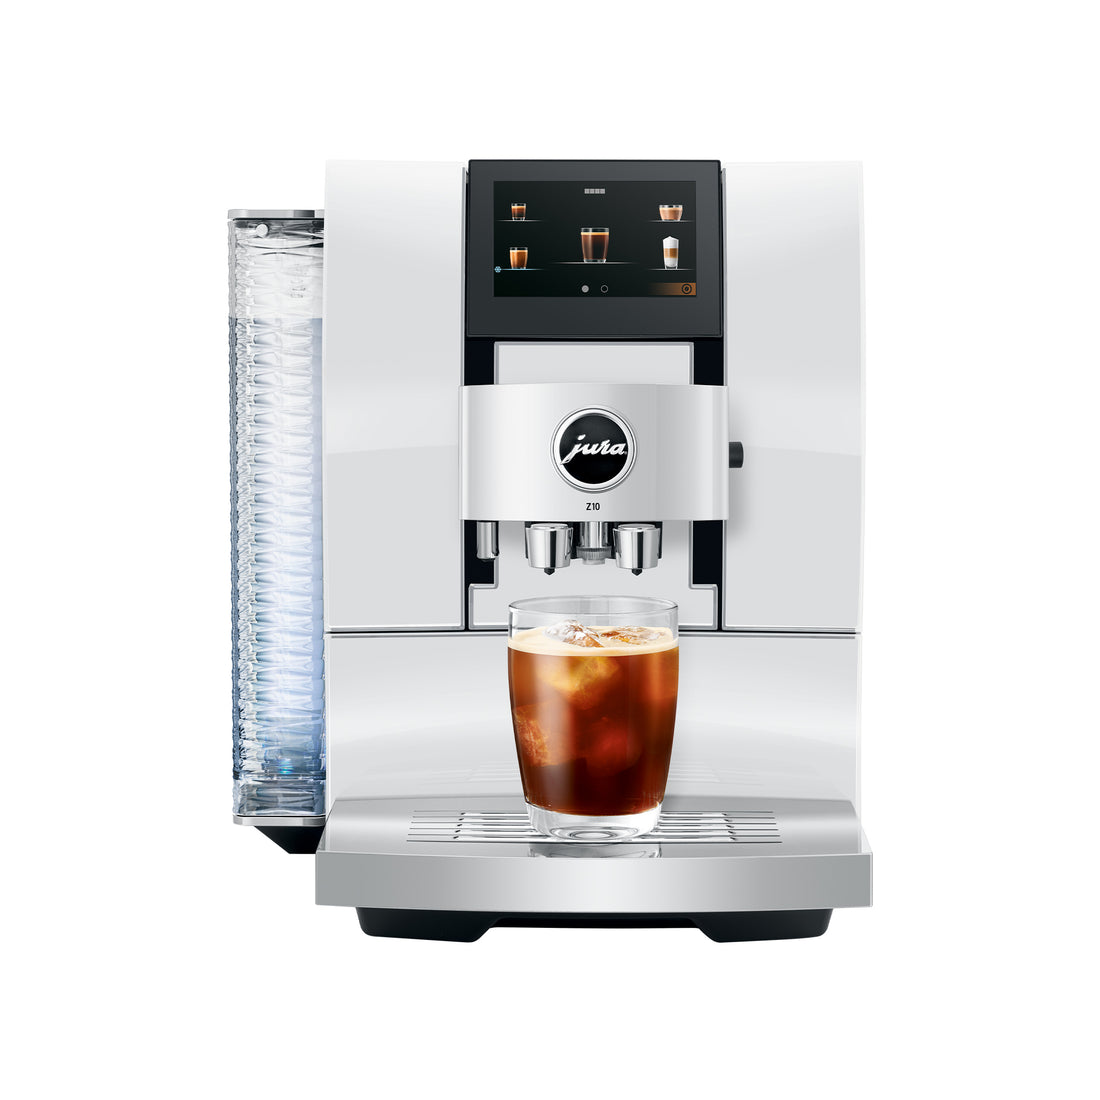 JURA Z10 Super-Automatic Espresso Machine in Diamond White